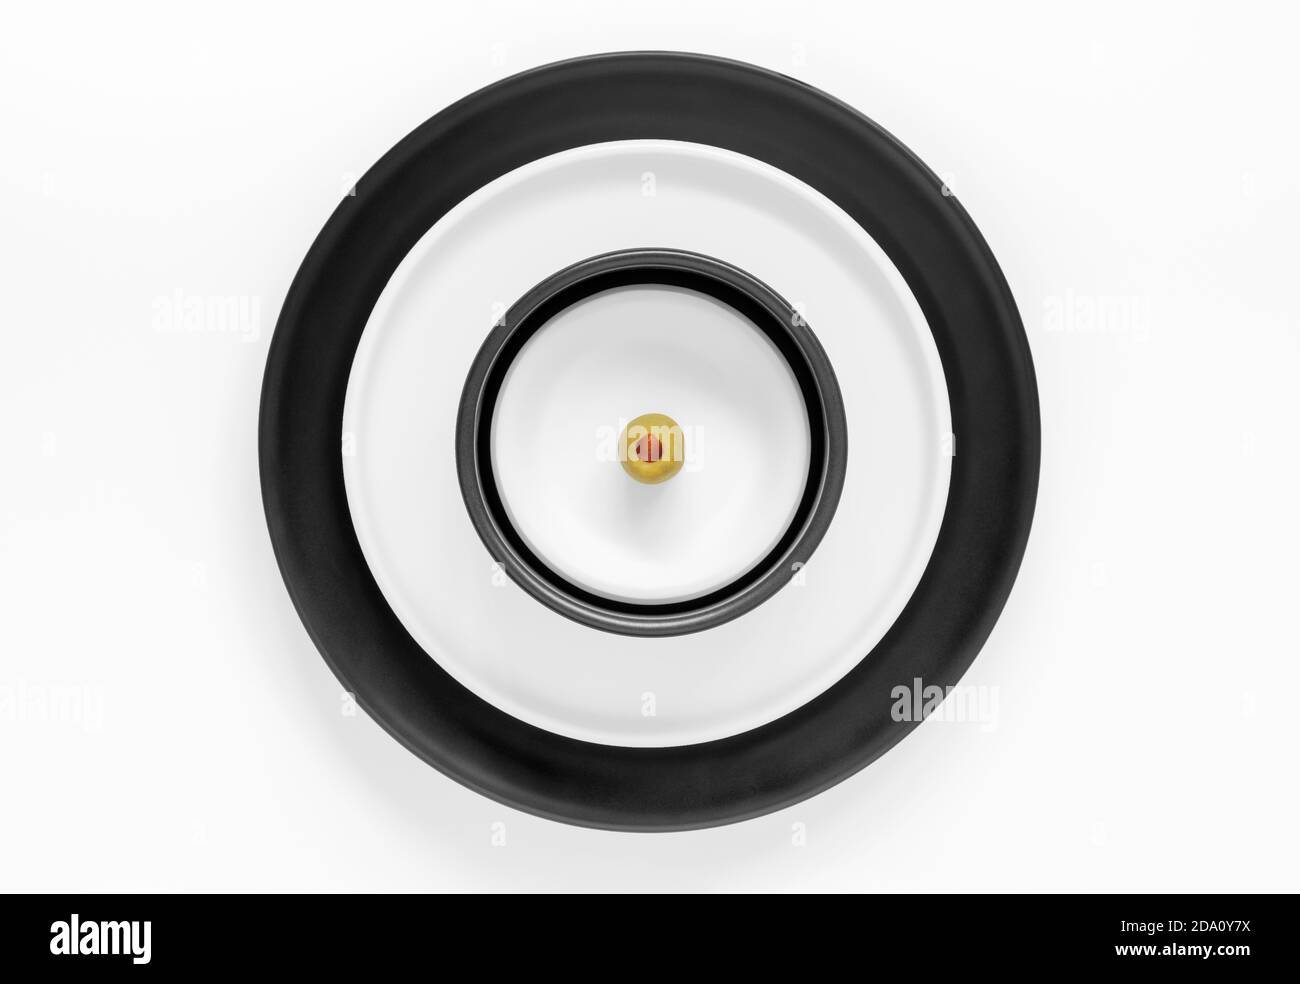 Plaques rondes empilées noires et blanches recouvertes d'une seule plaque olive Banque D'Images